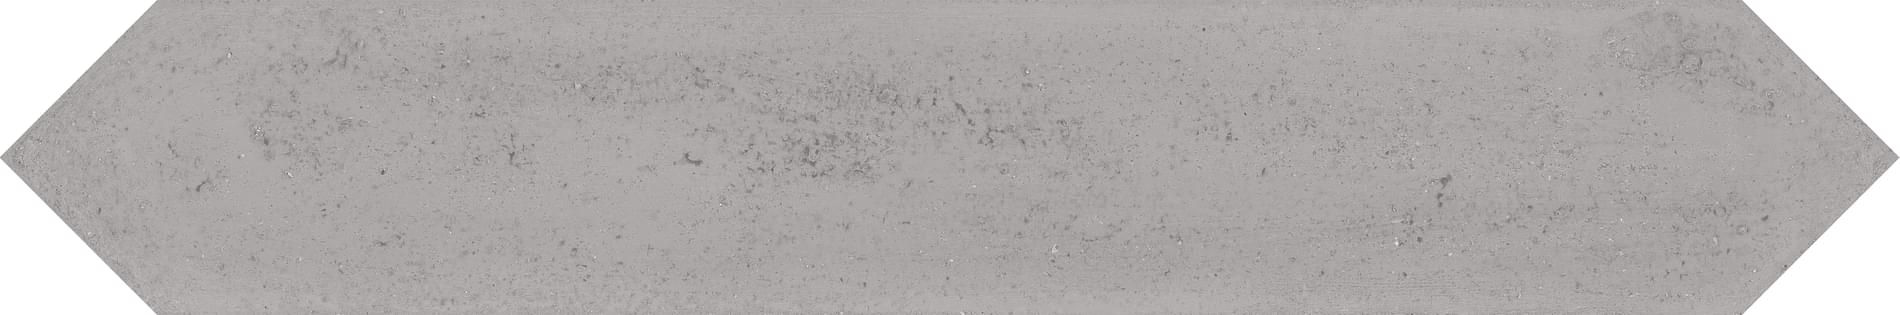 Wow Love Affairs Concrete Crayon Ash Grey 9.8x59.8